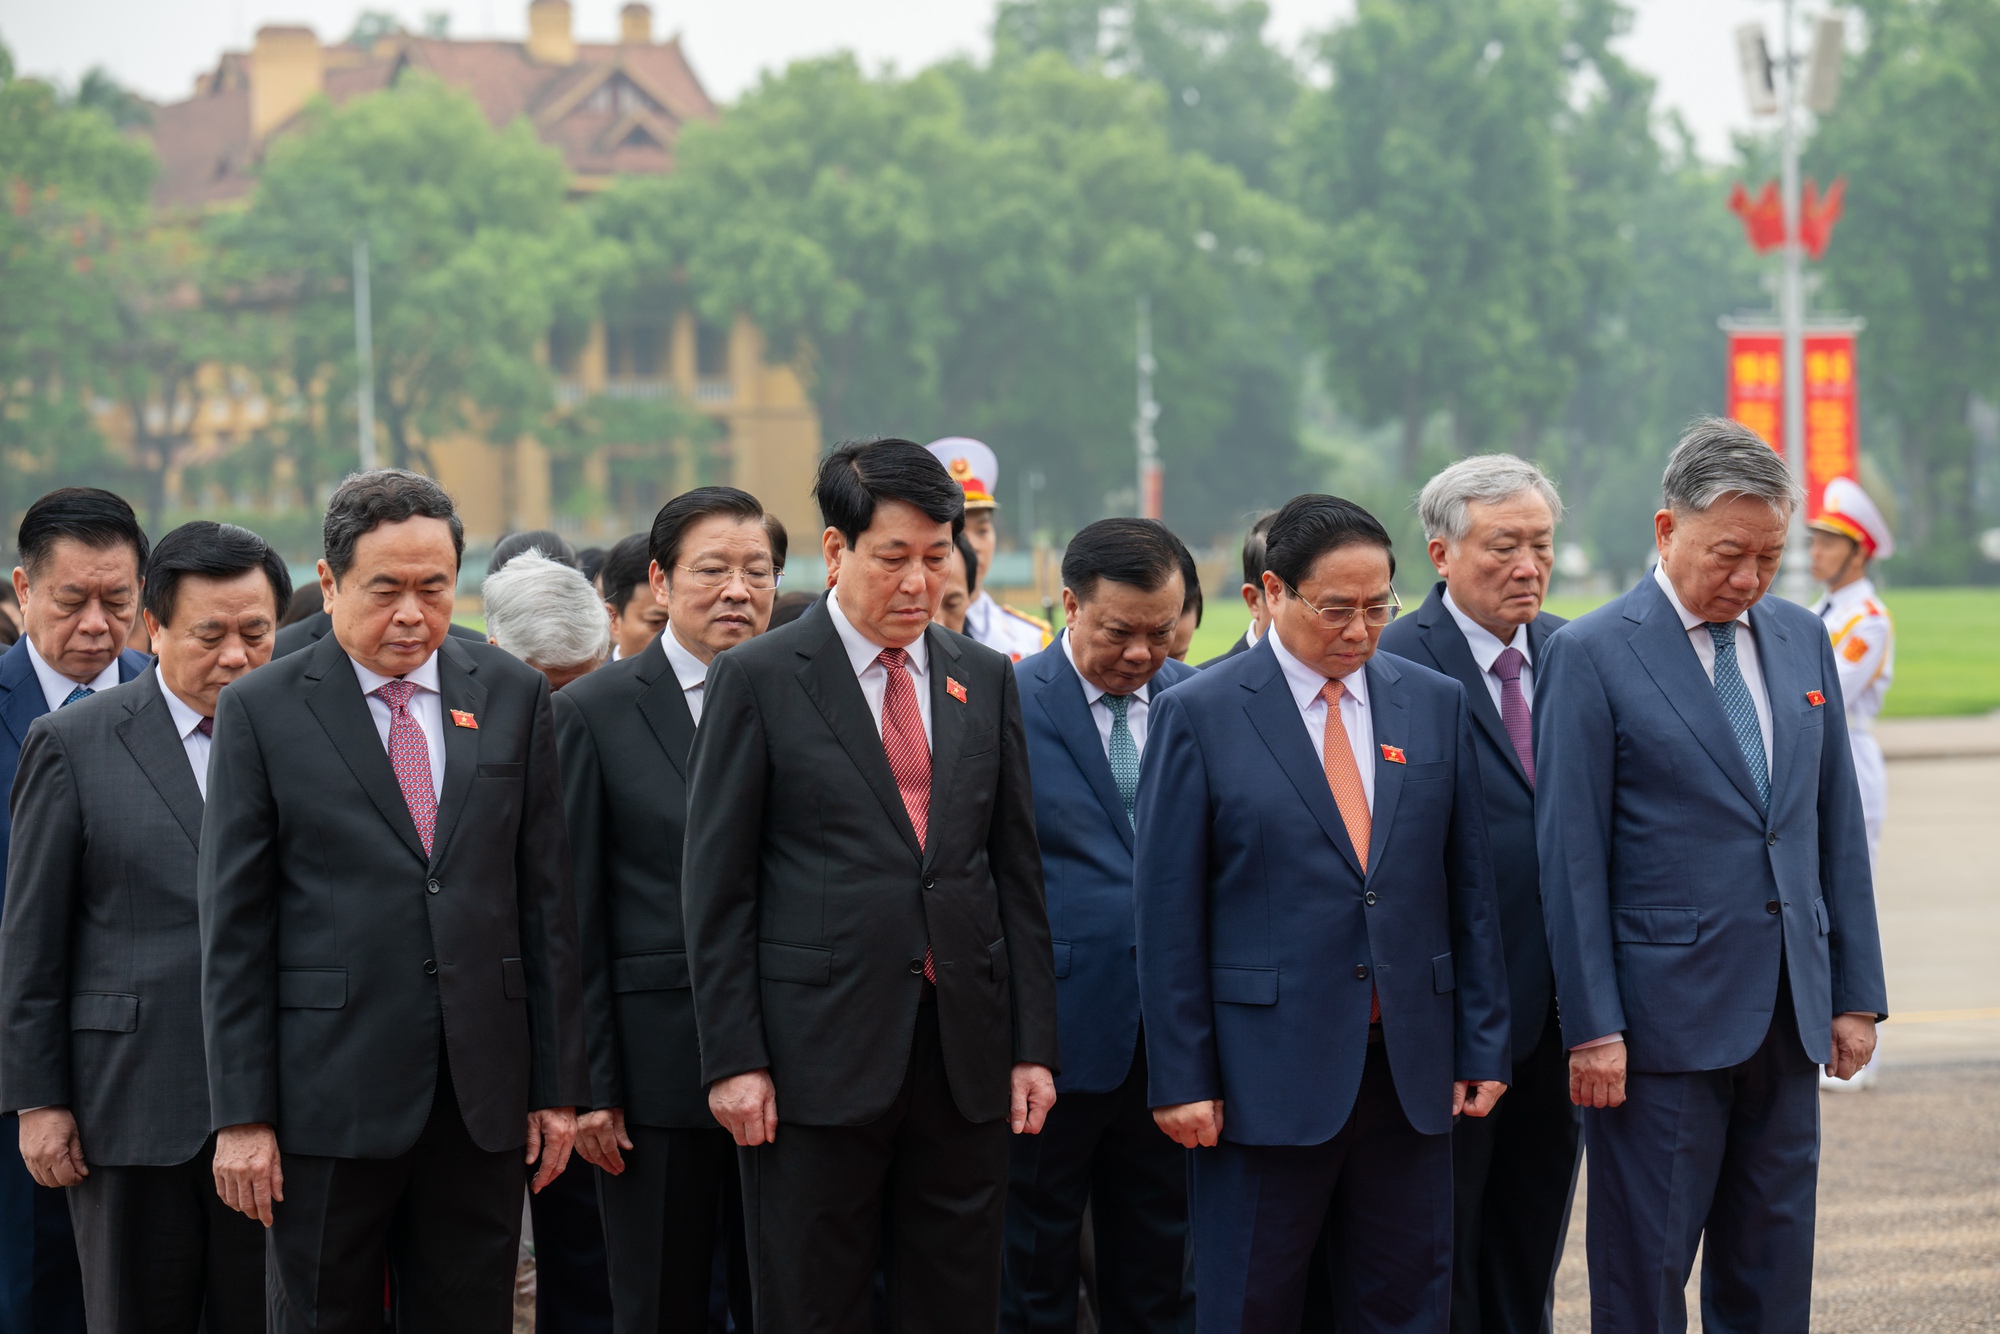 Lãnh đạo Đảng, Nhà nước và các đại biểu Quốc hội vào Lăng viếng Chủ tịch Hồ Chí Minh trước khai mạc Kỳ họp thứ 7, Quốc hội khóa XV - Ảnh 9.